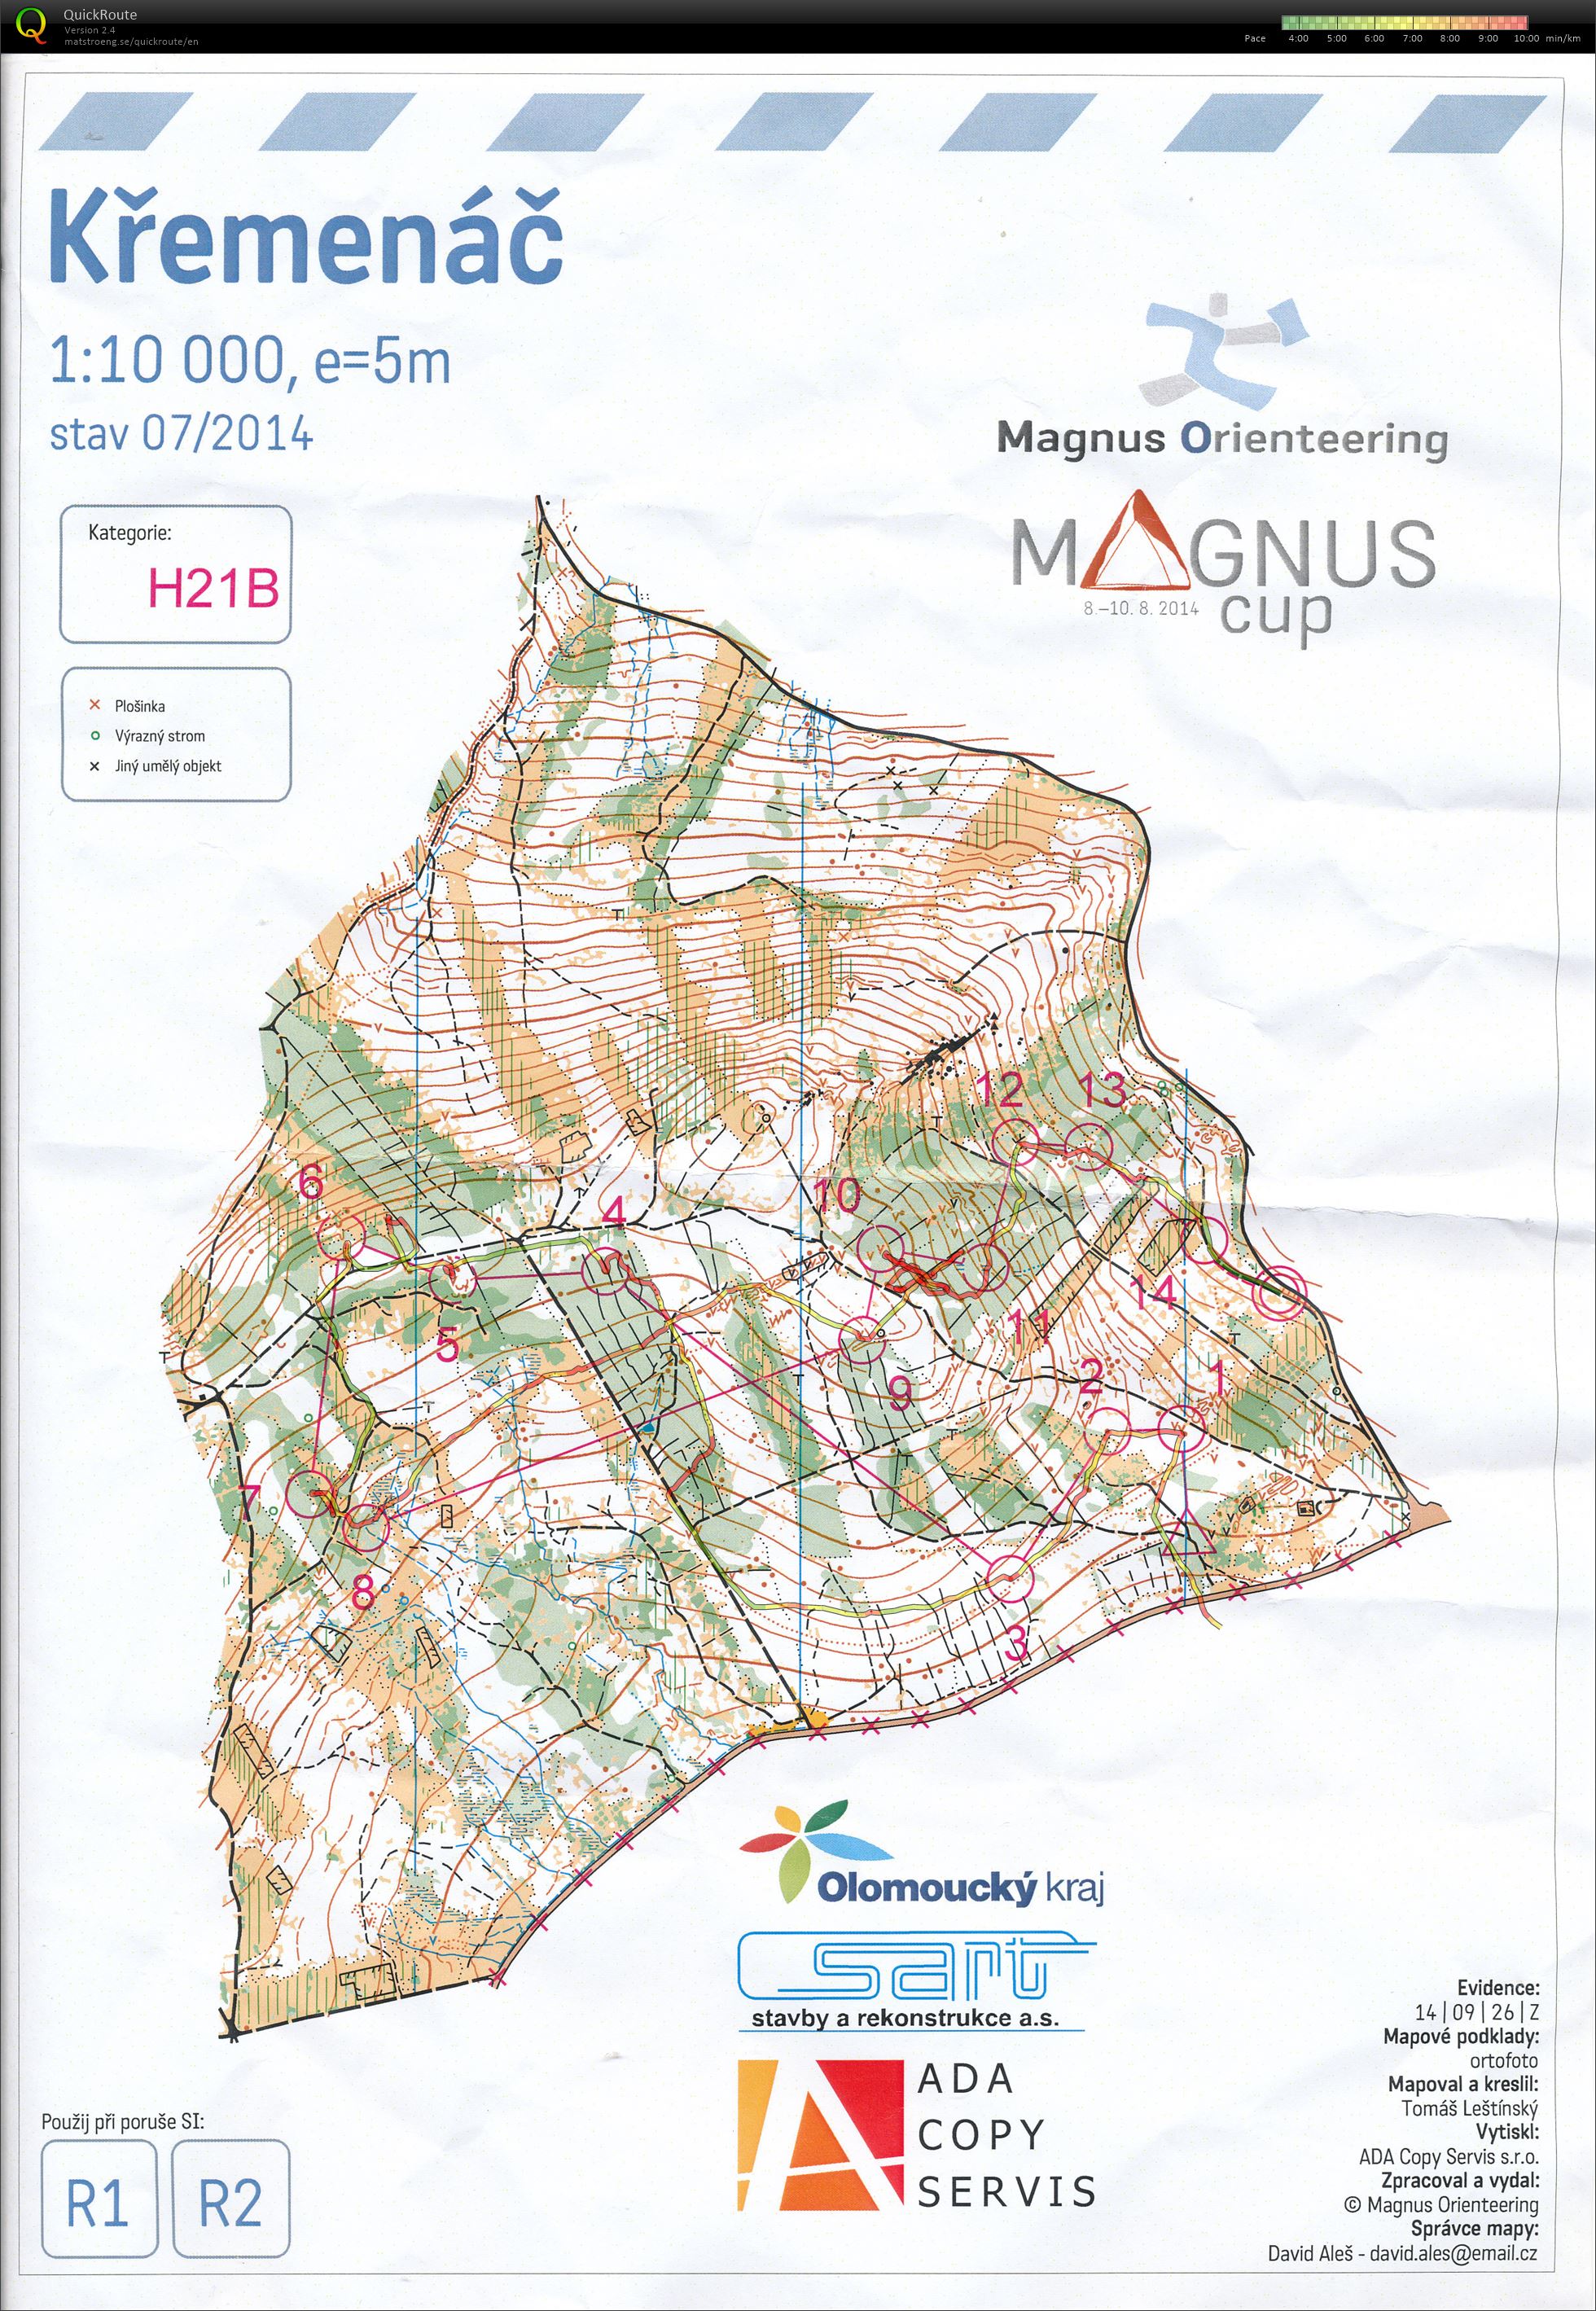 Magnus Cup - Etapa 1 (08.08.2014)